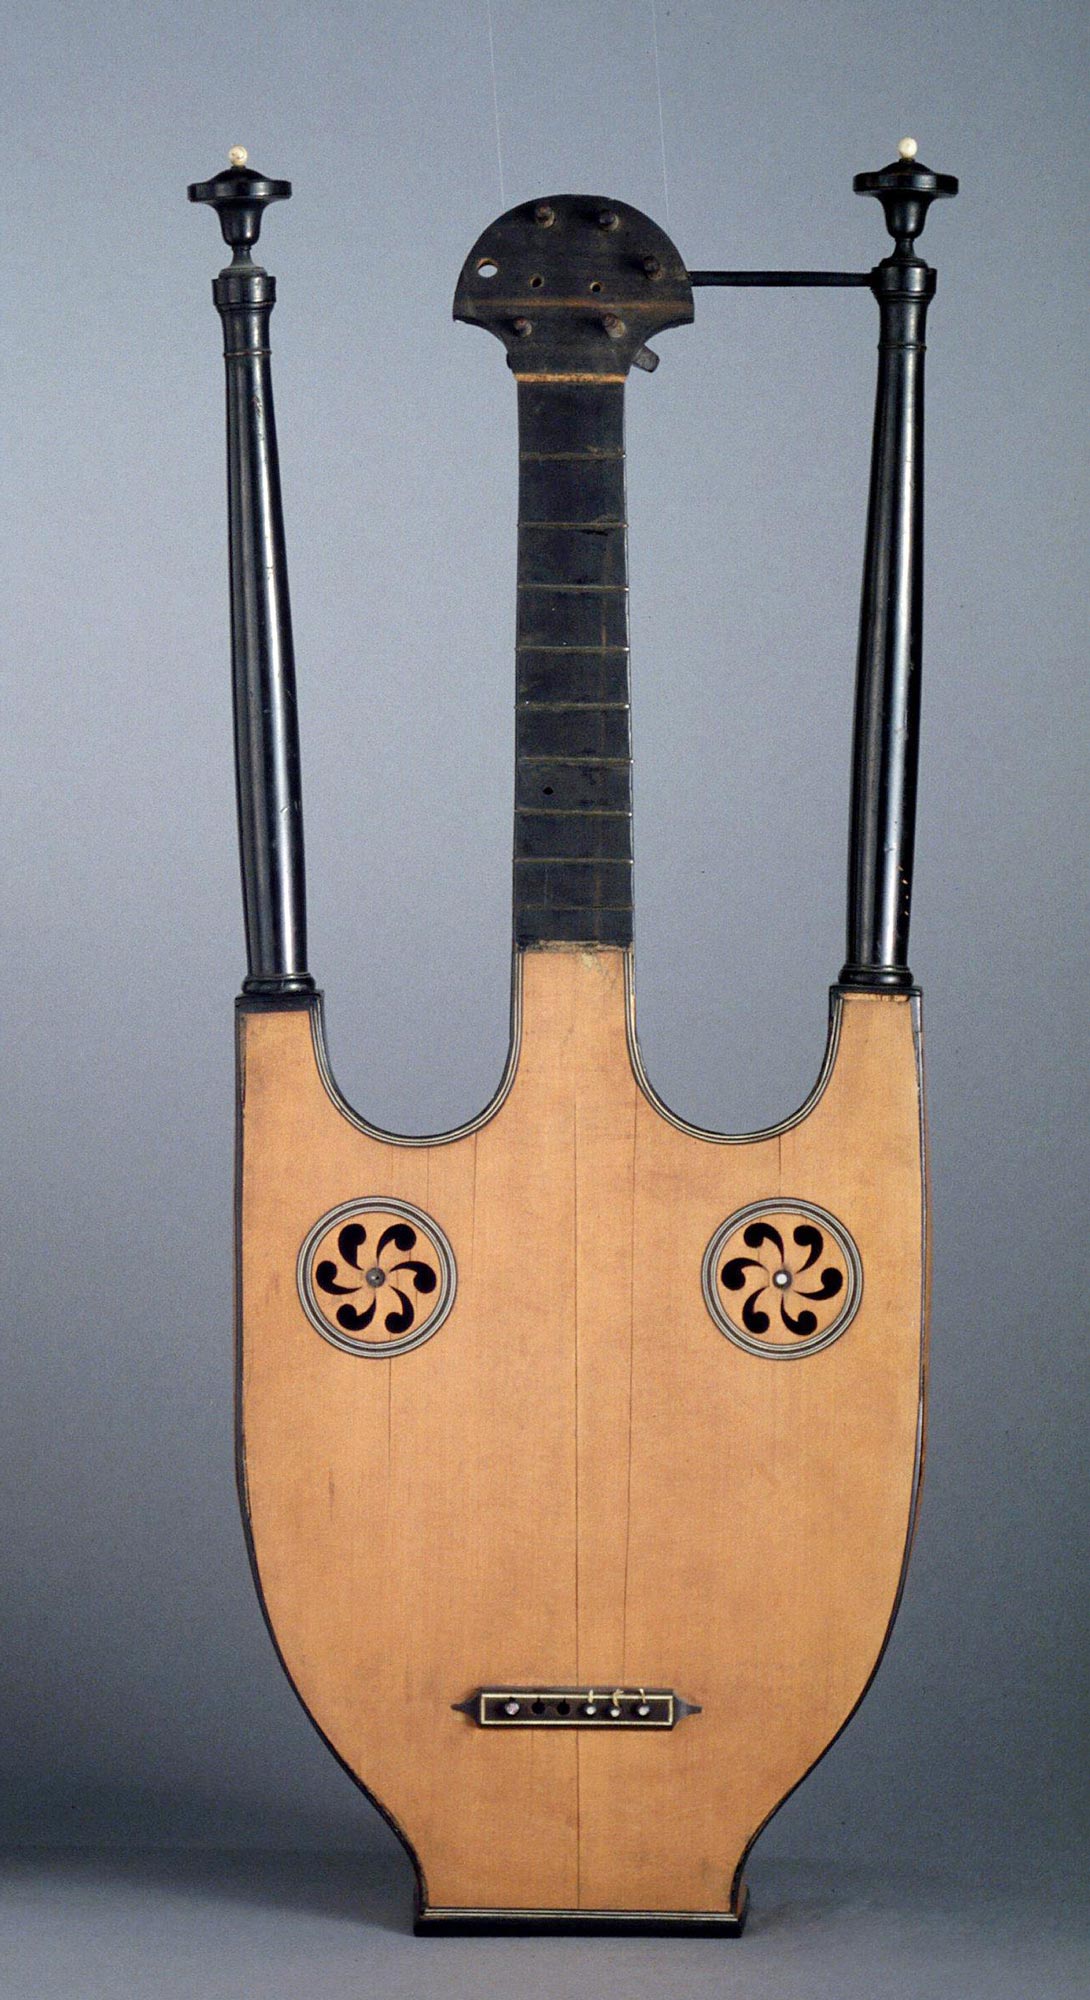 Guitare-lyre, anonyme français, vers 1810, Musée de la Musique, c Jean-Marc Anglès